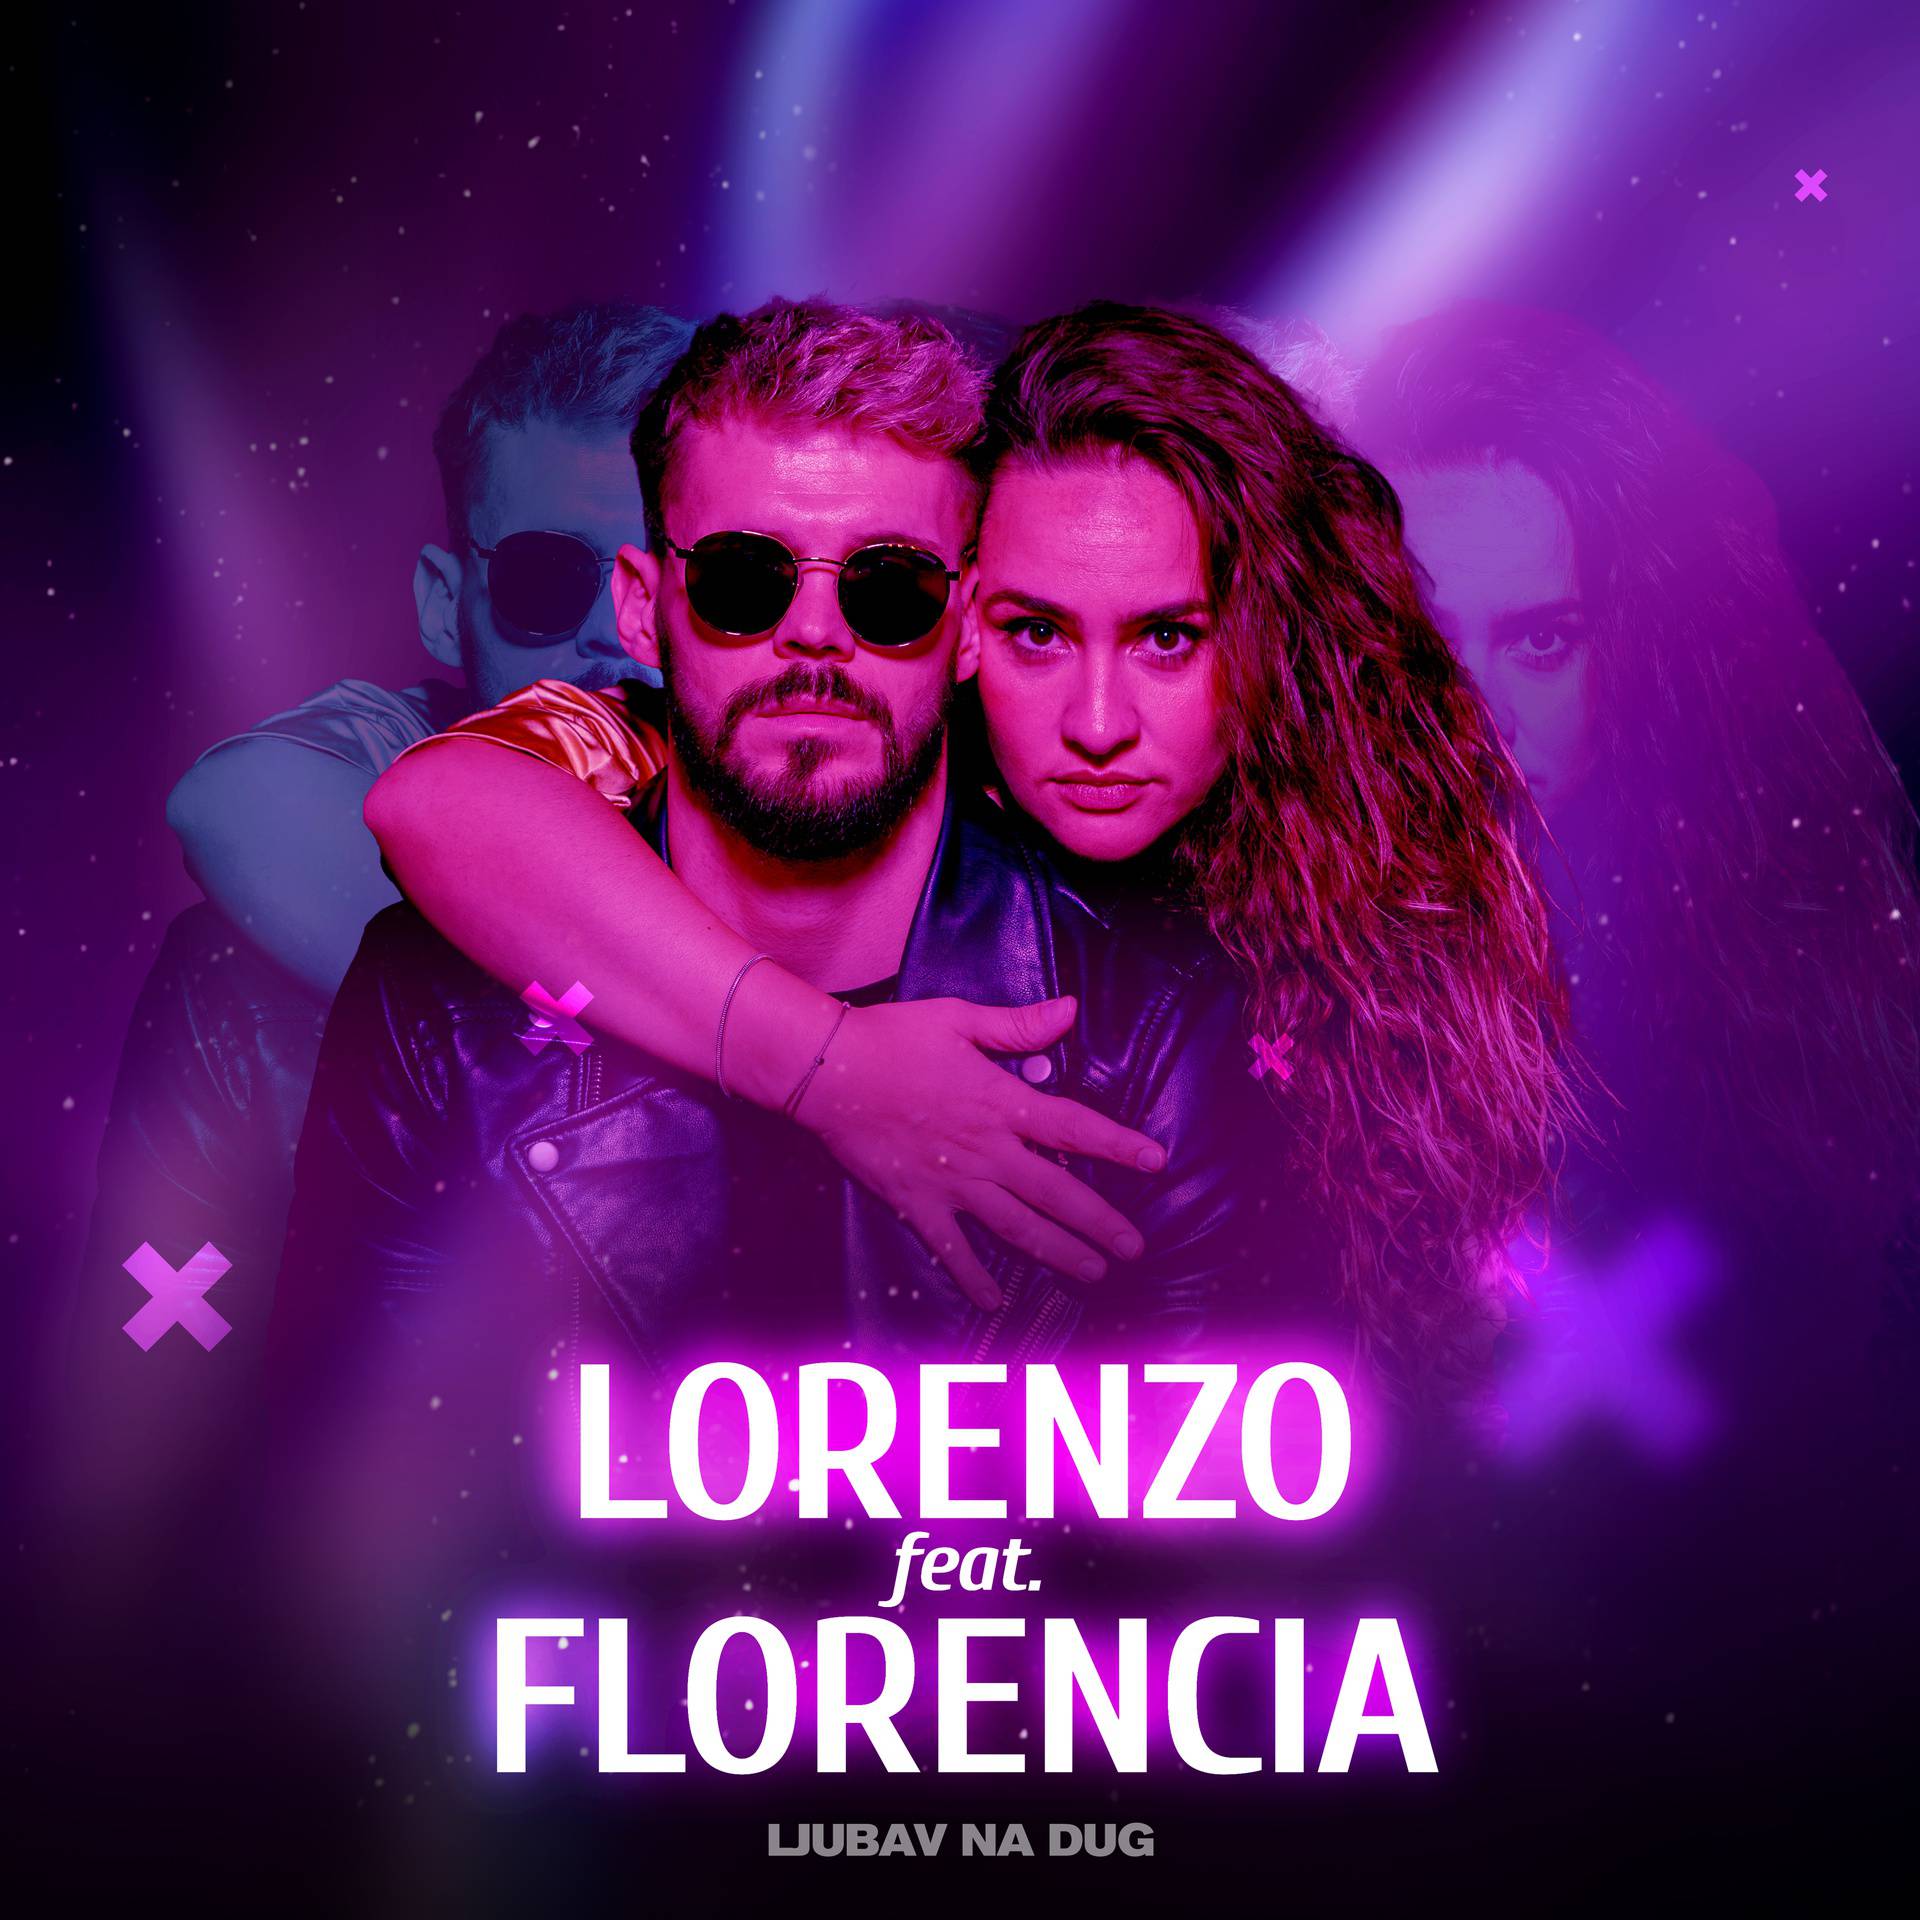 Jedan od napoznatijih DJ-eva i hrvatska Shakira izbacili novi plesni hit imena 'Ljubav na dug'